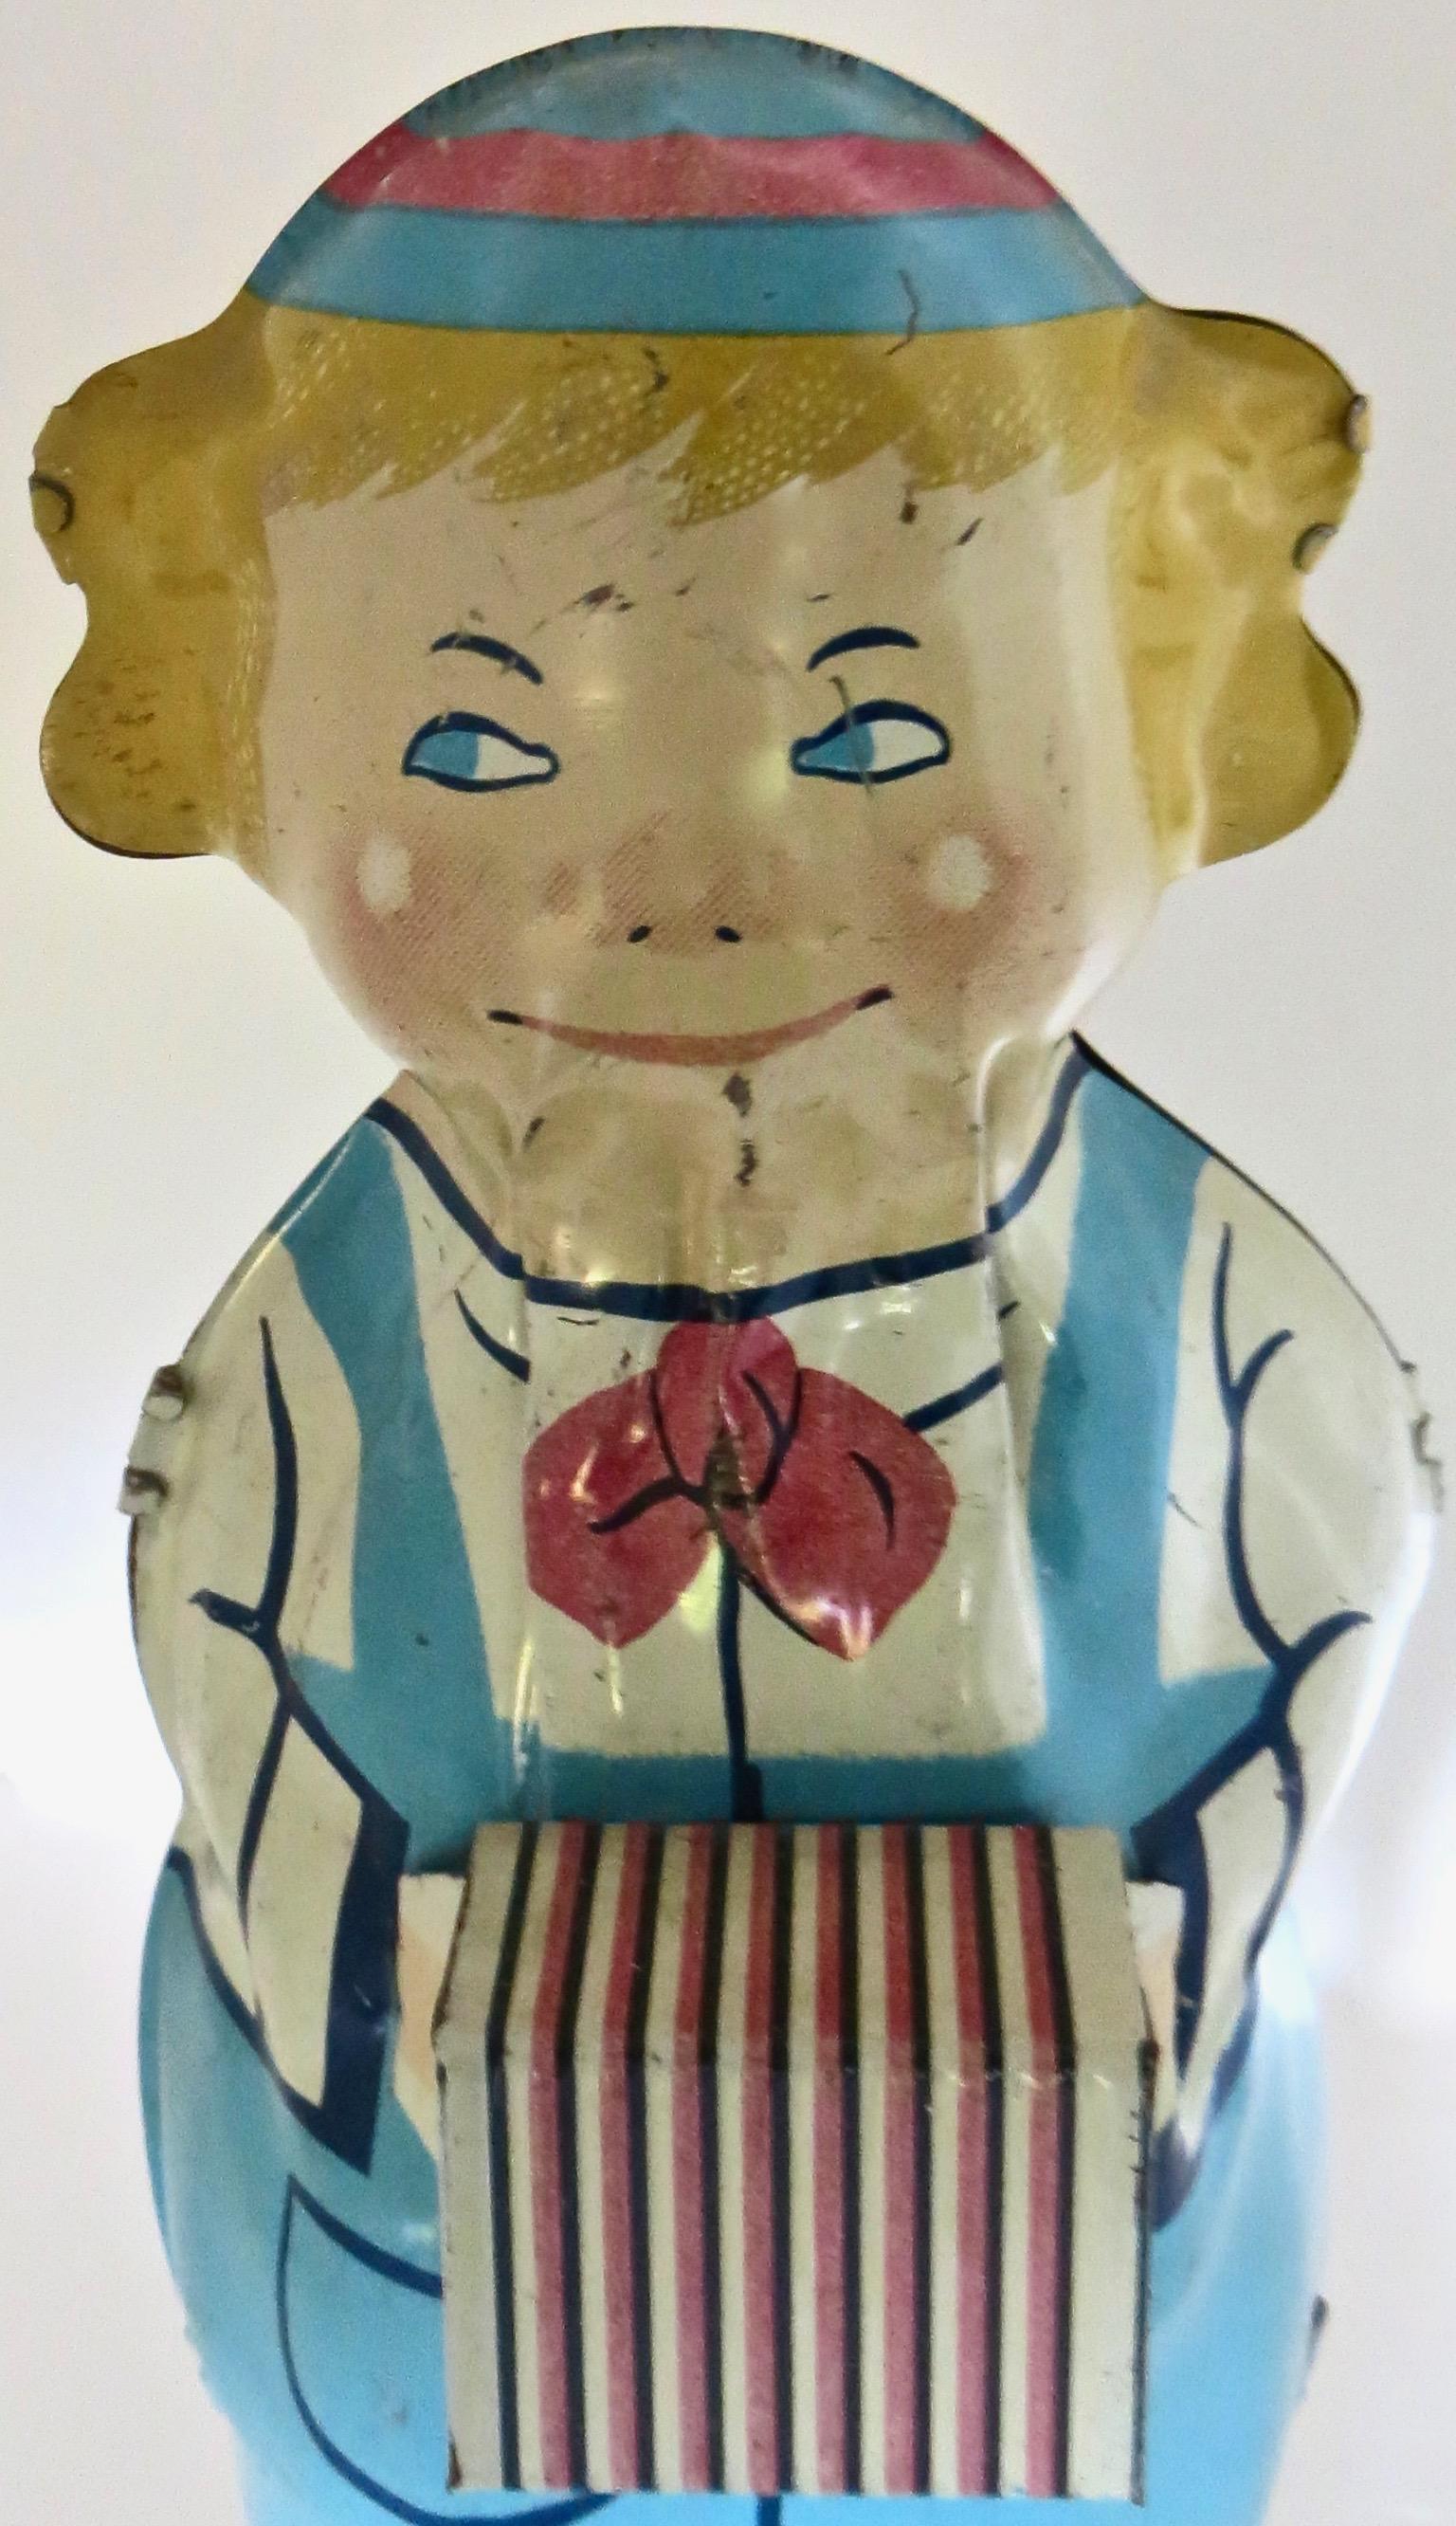 Folk Art Vintage Toy by Lindstrom Dancing Dutch Boy Playing Accordion American Circa 1930 For Sale